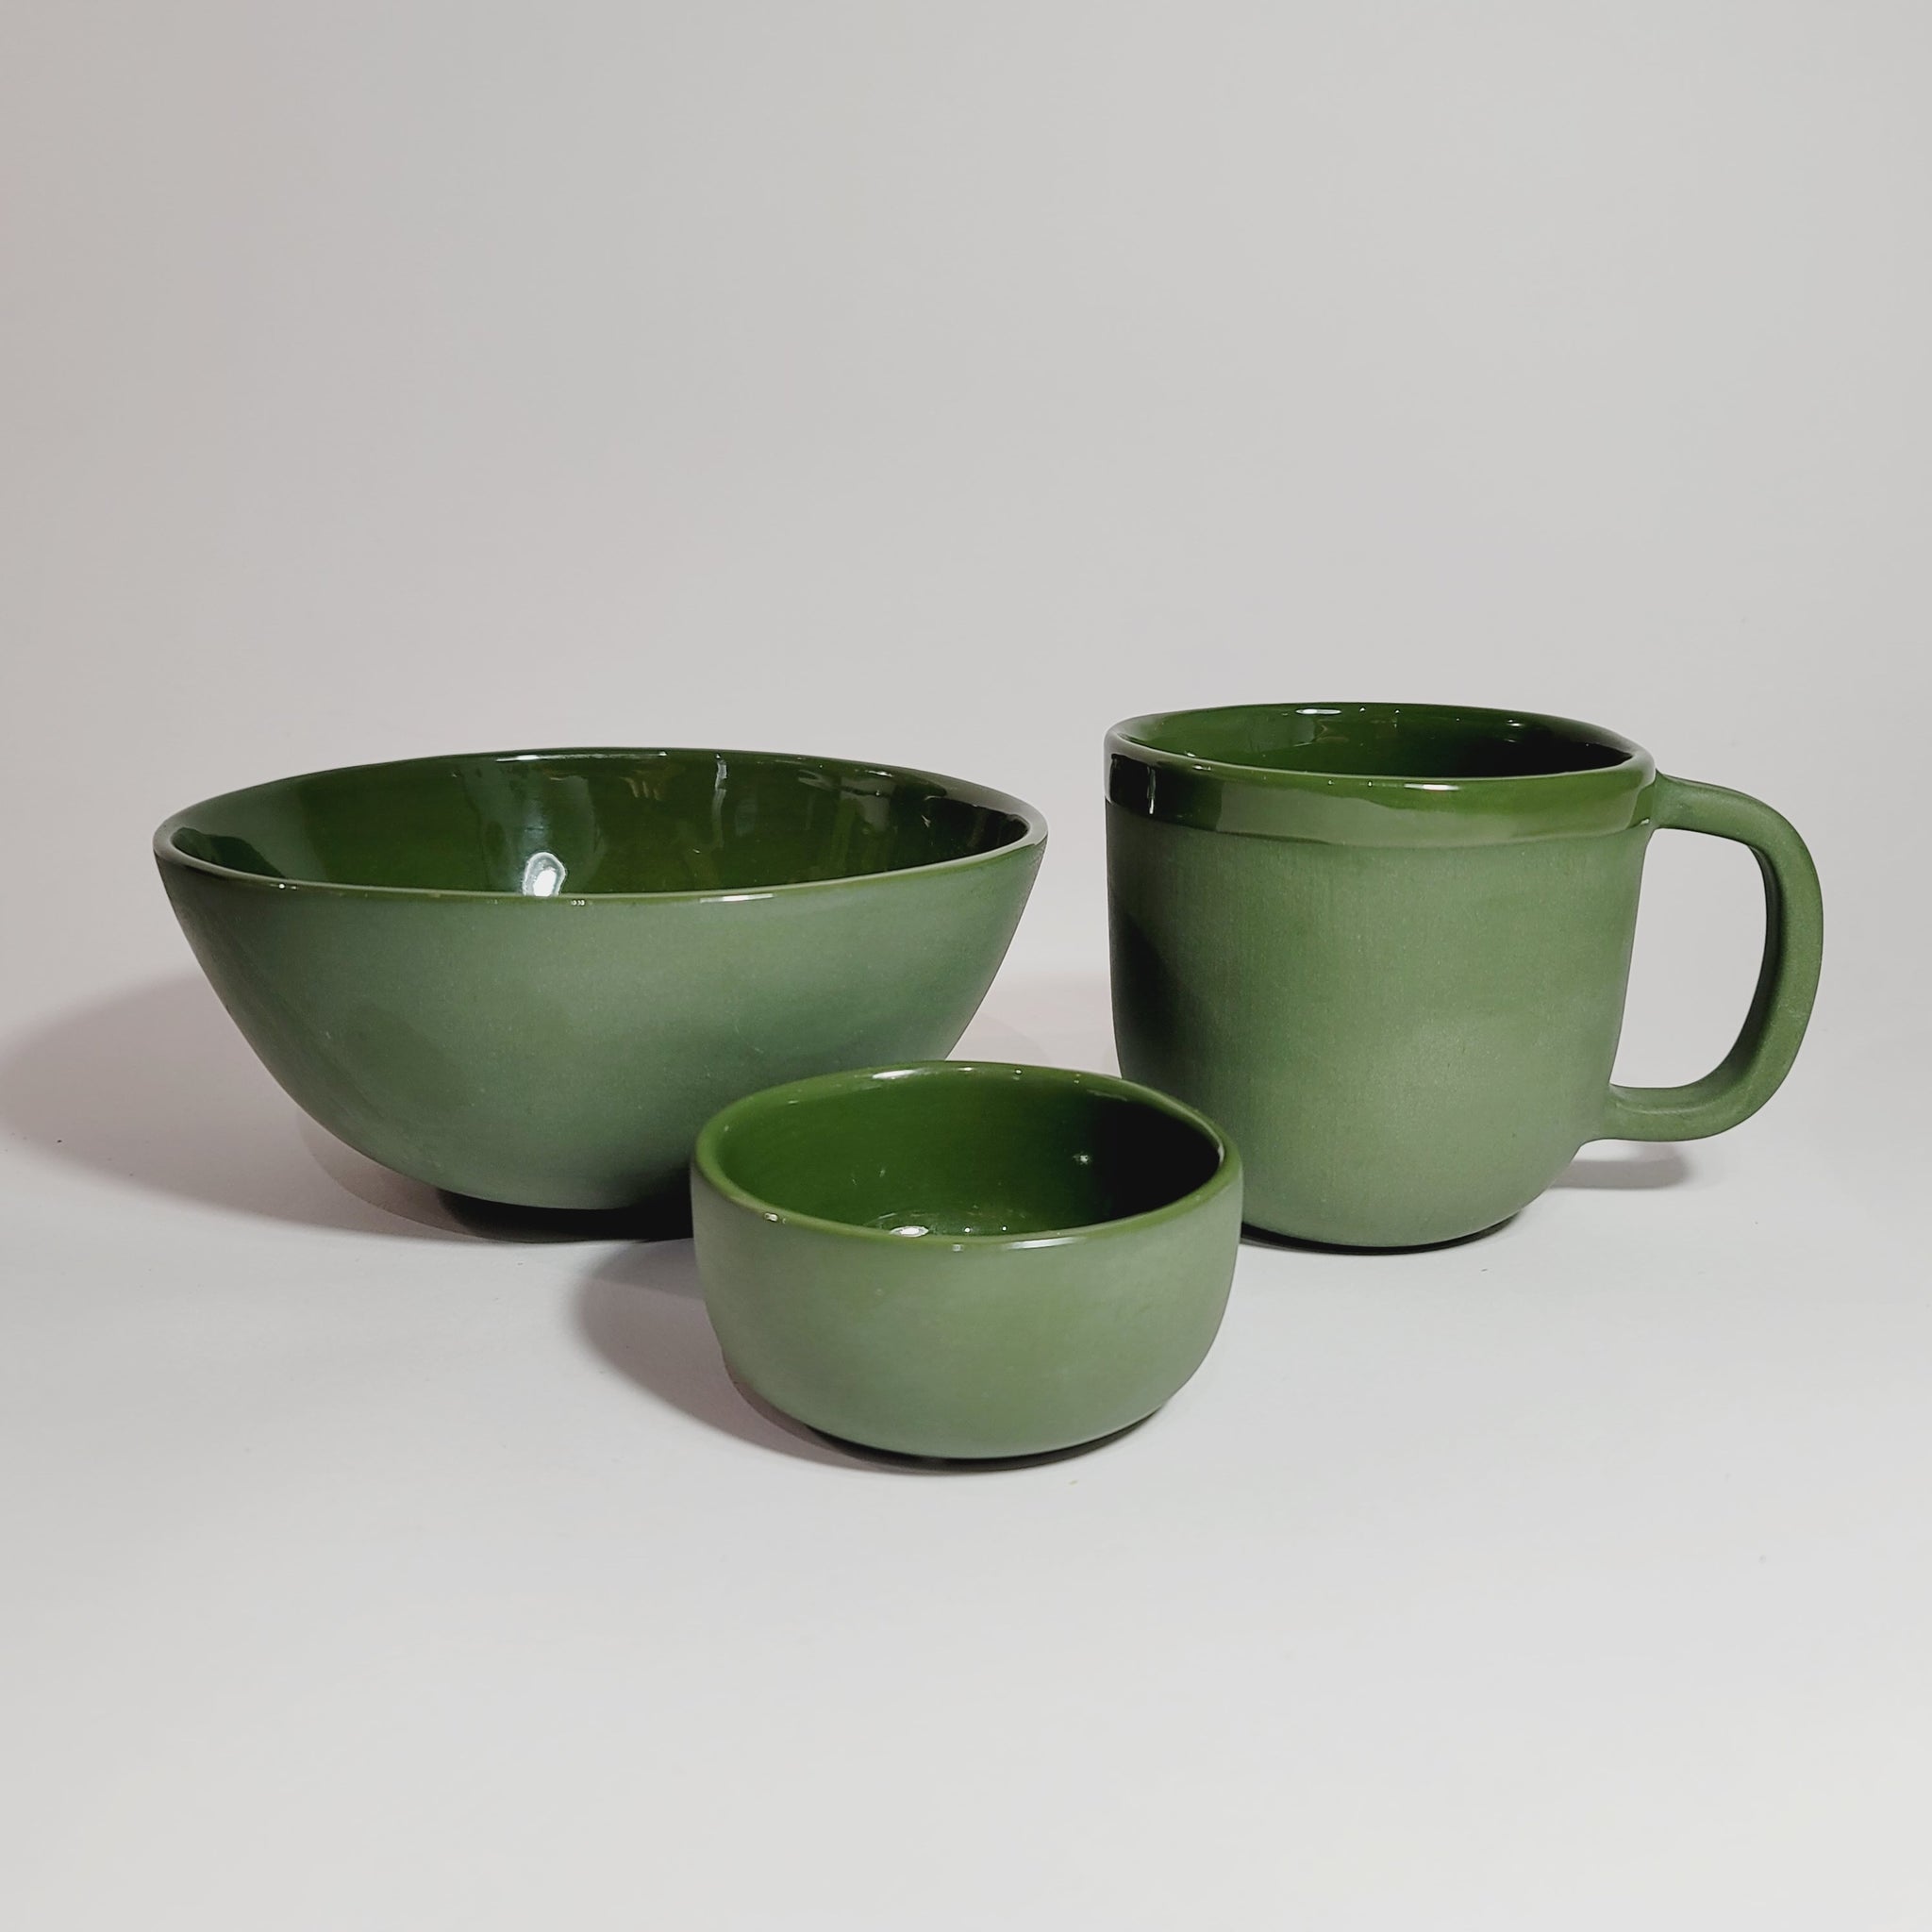 Handmade Porcelain Saucer, Green